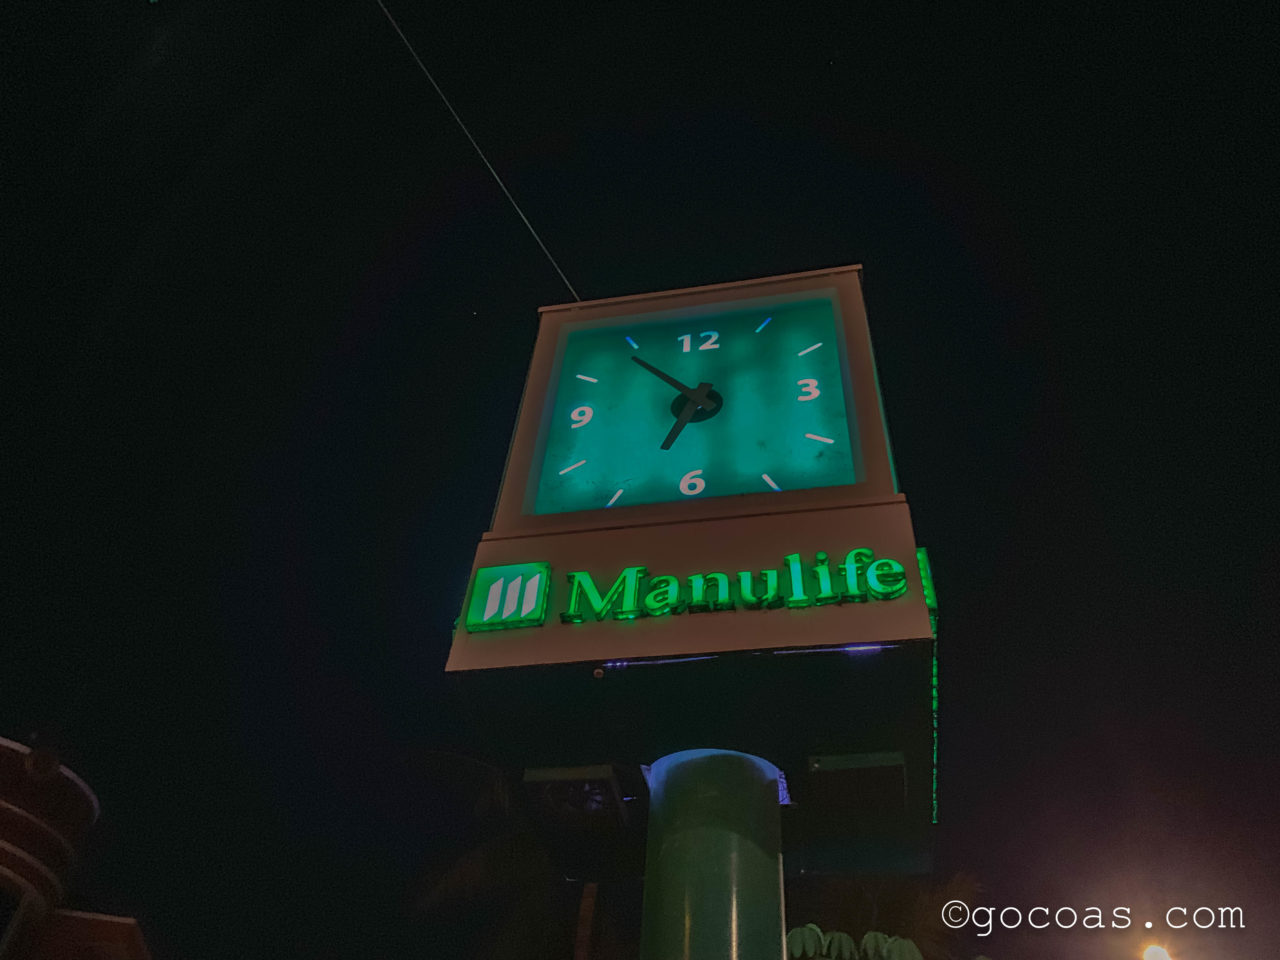 シェムリアップでトゥクトゥクドライバーと待ち合わせした街中にある緑色の時計